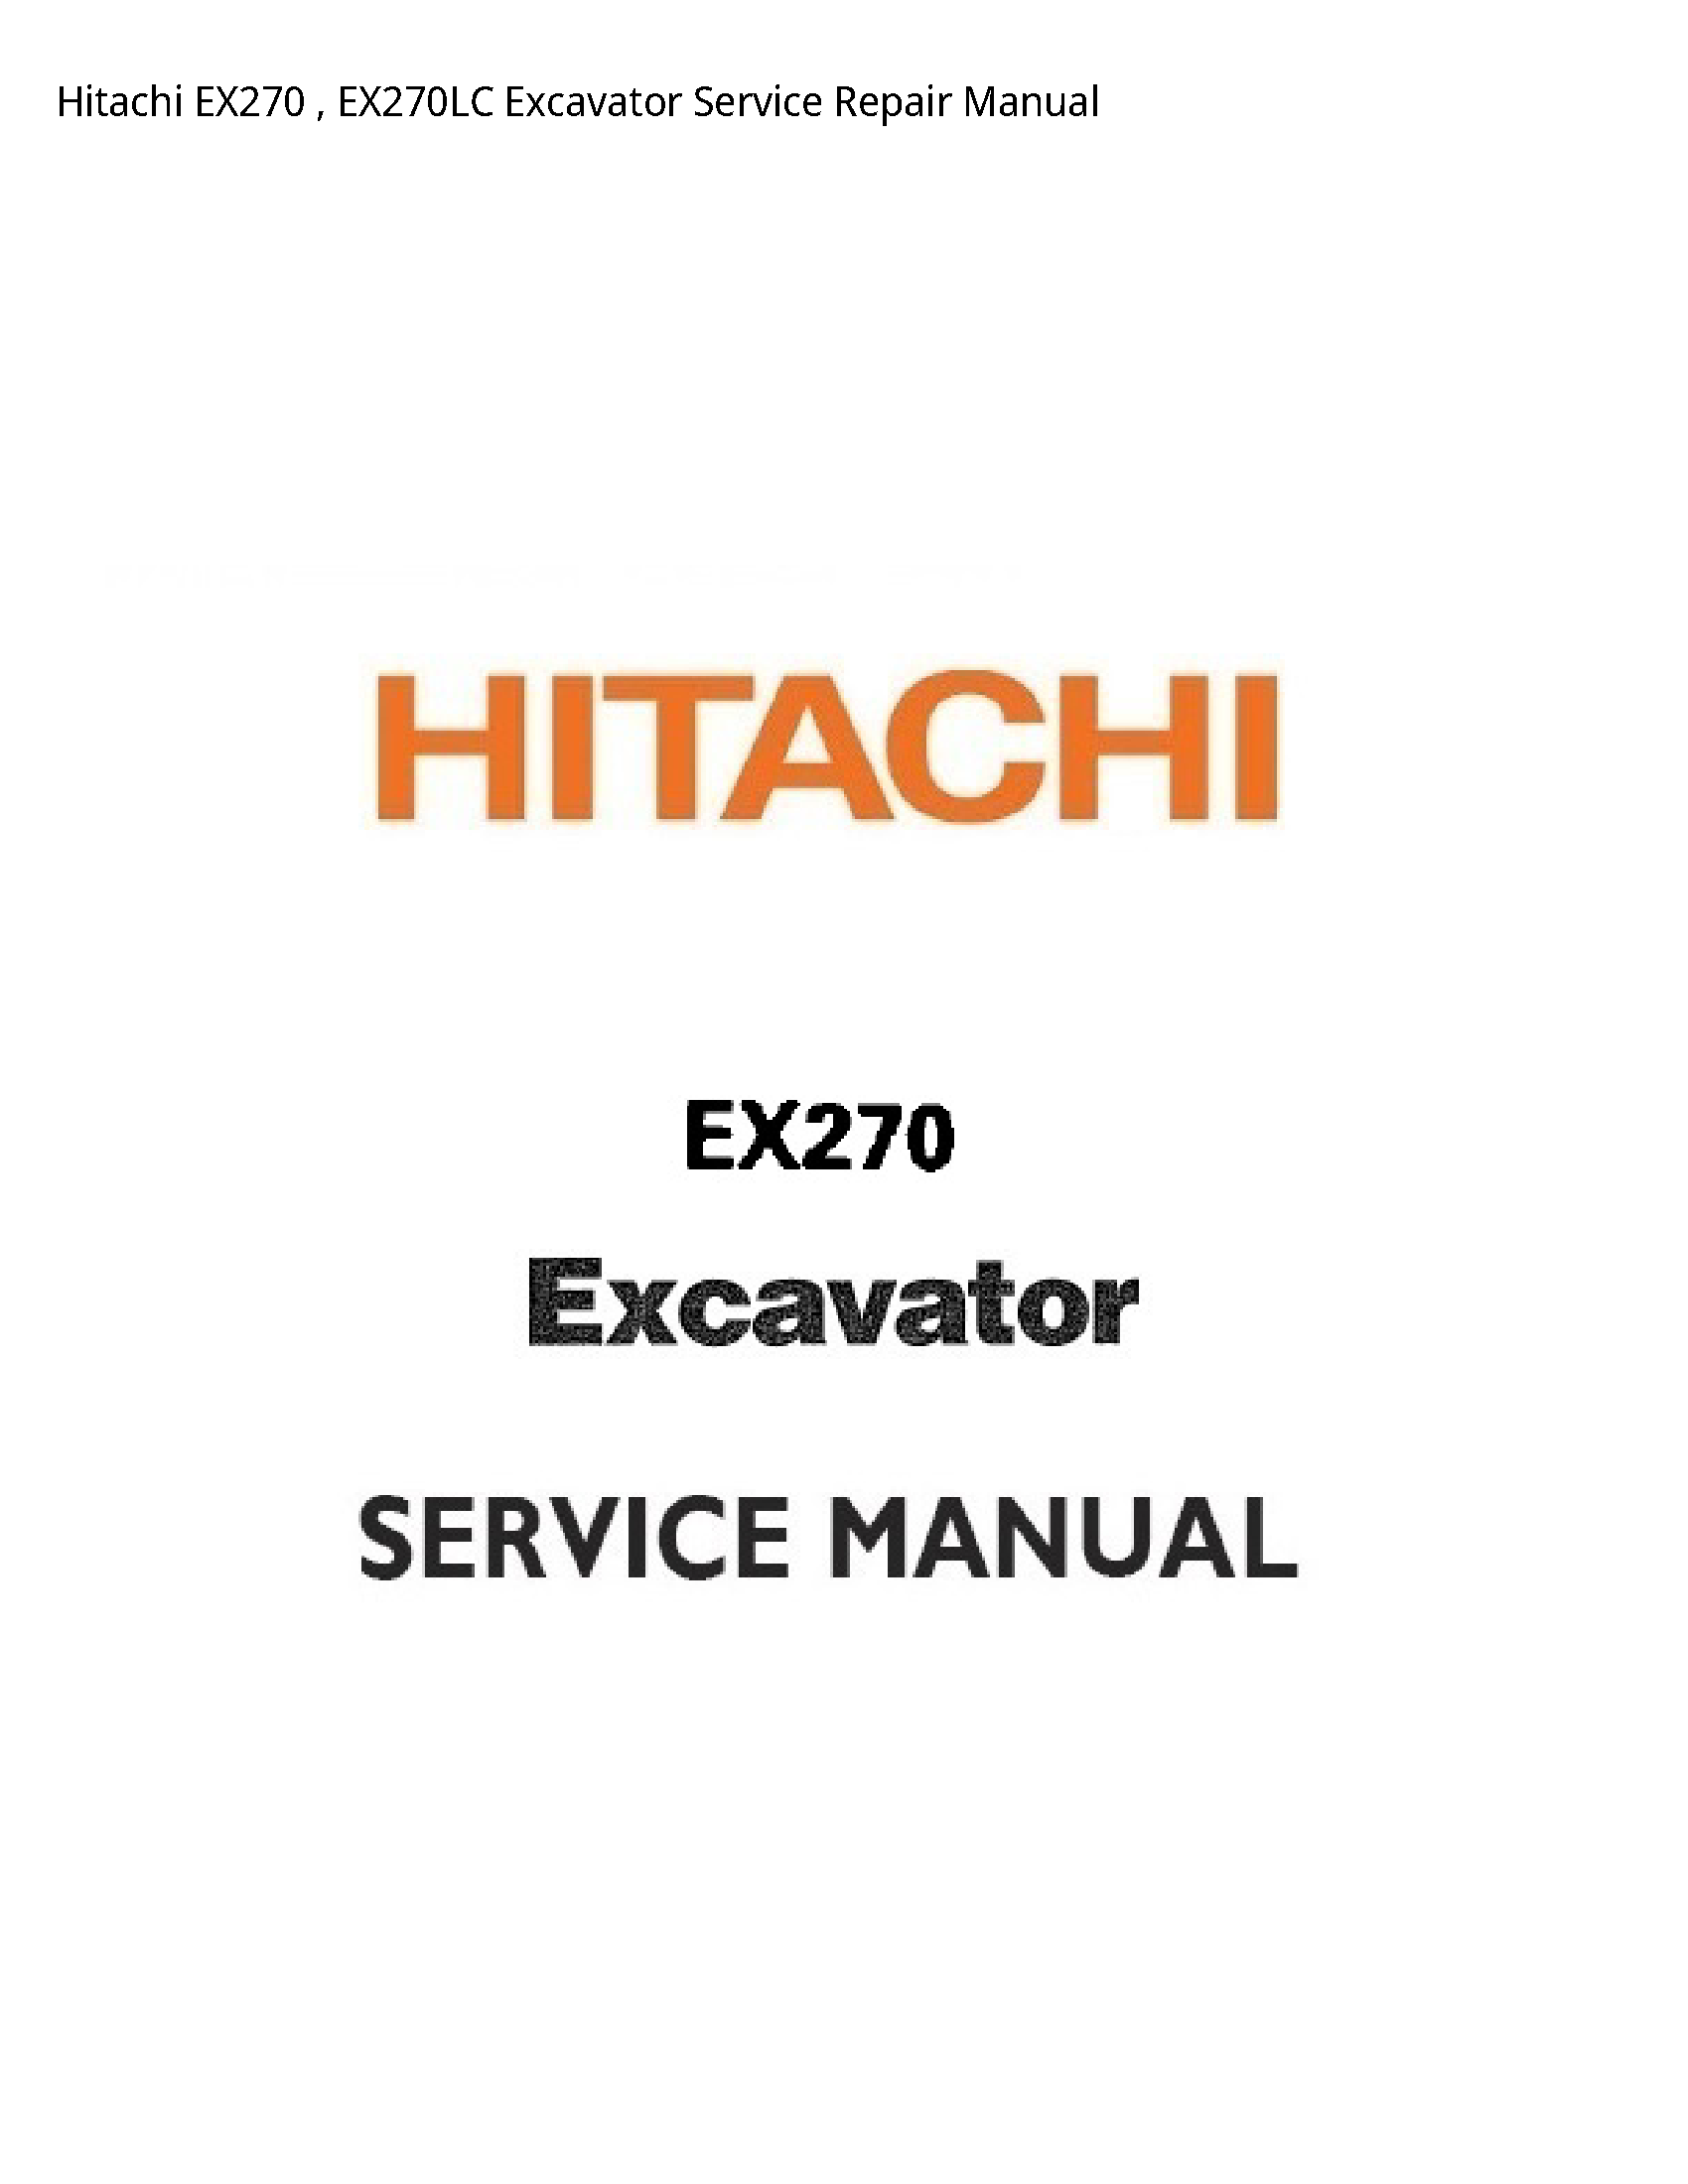 Hitachi EX270 Excavator manual